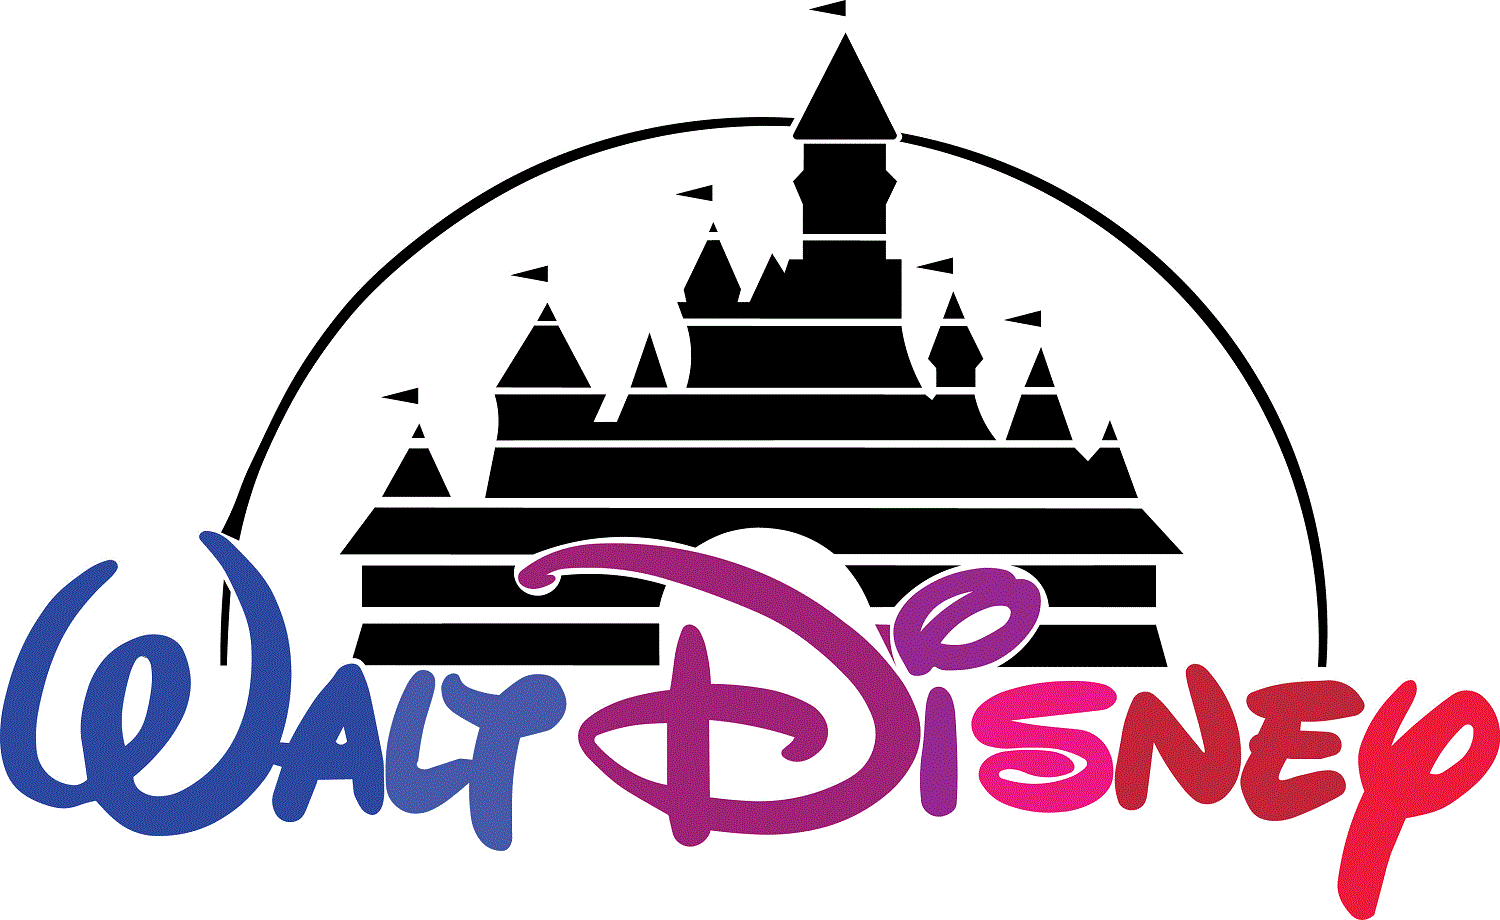 Walt Disney TV ad by Thierry Legrand